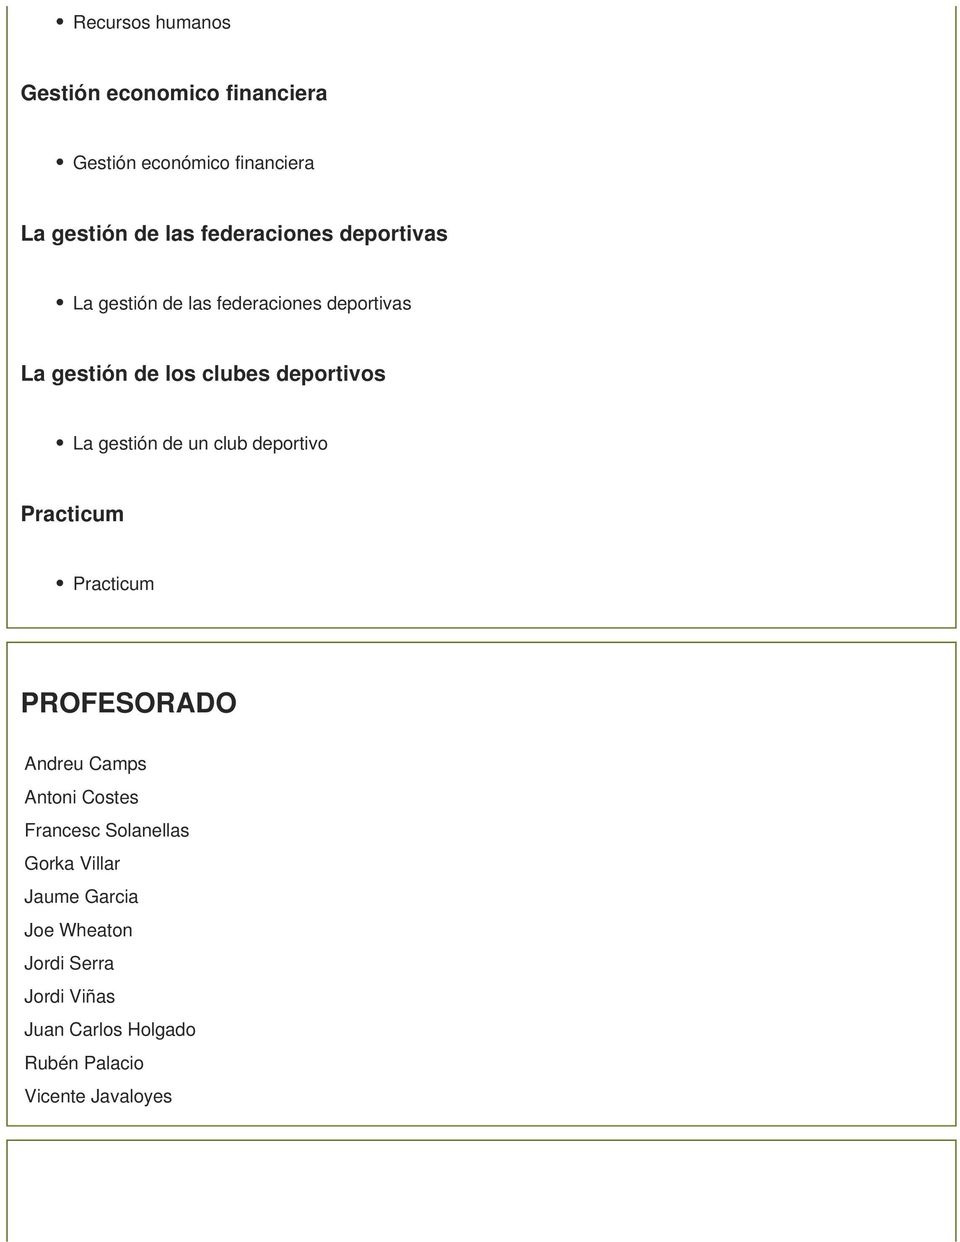 gestión de un club deportivo Practicum Practicum PROFESORADO Andreu Camps Antoni Costes Francesc